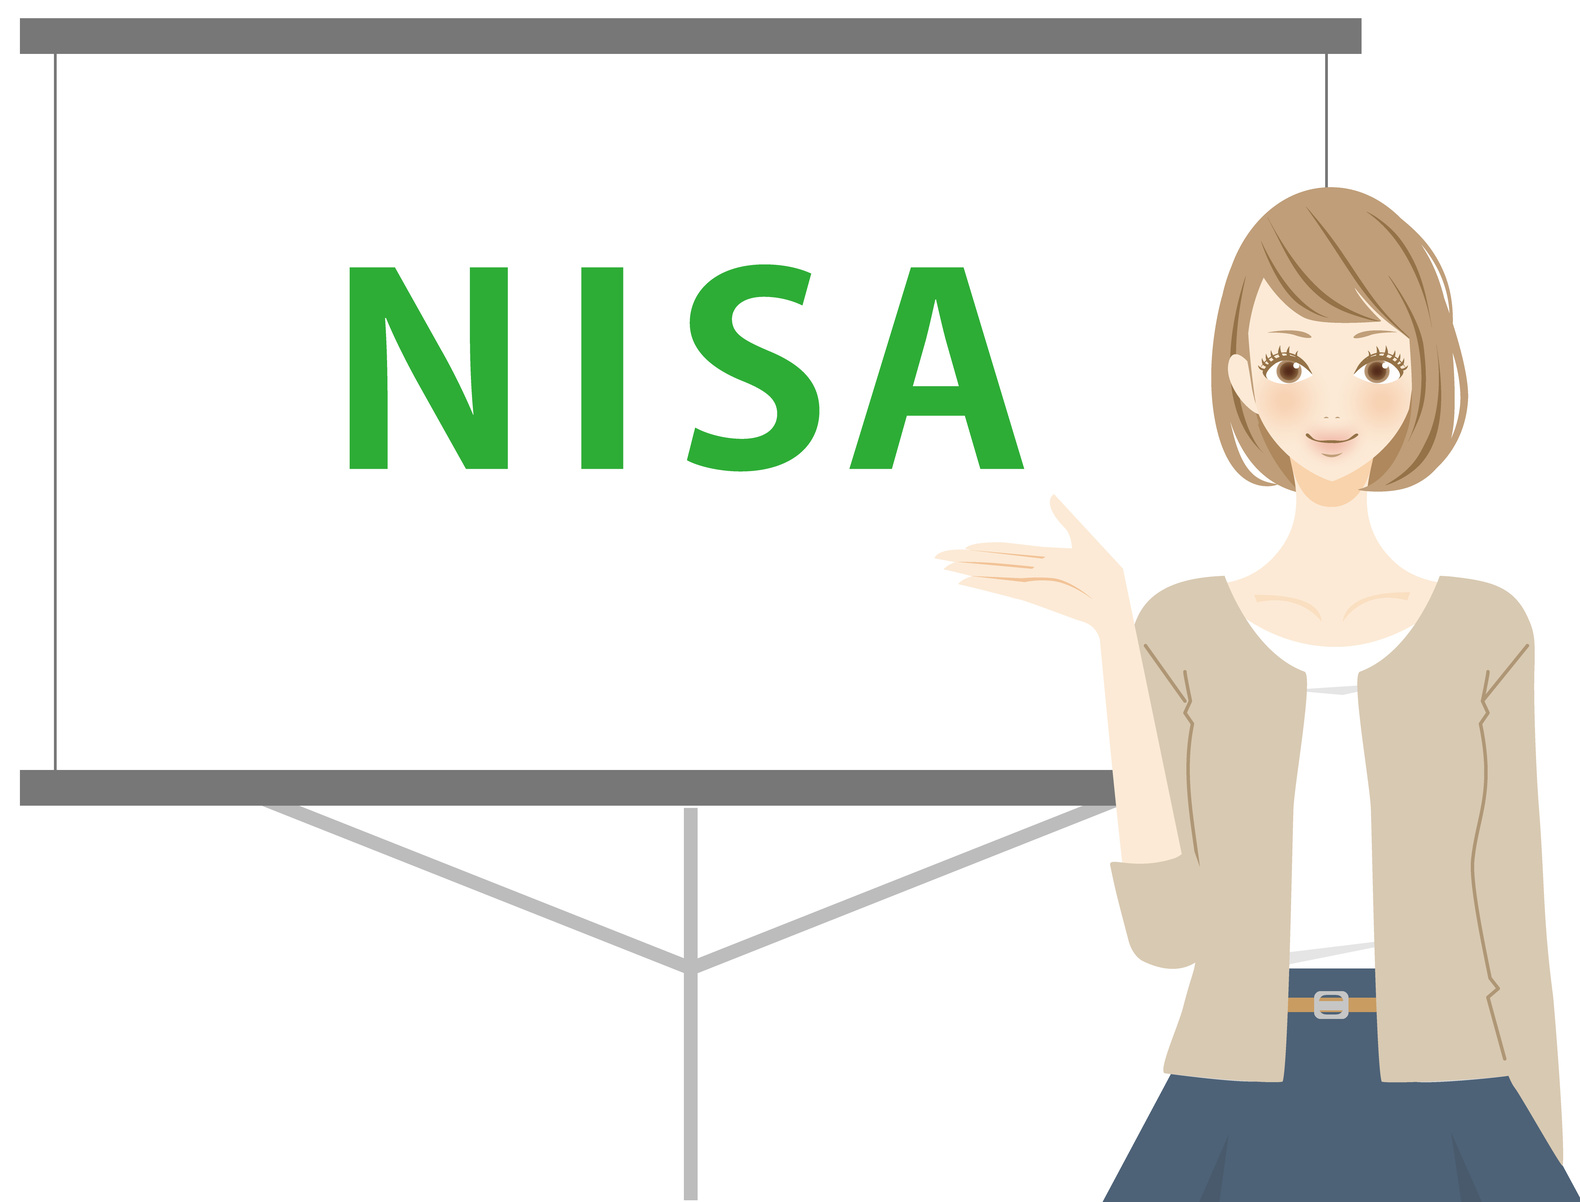 NISAとは？メリットとデメリットとニーサにはSBI証券がおすすめである理由をわかりやすく解説。